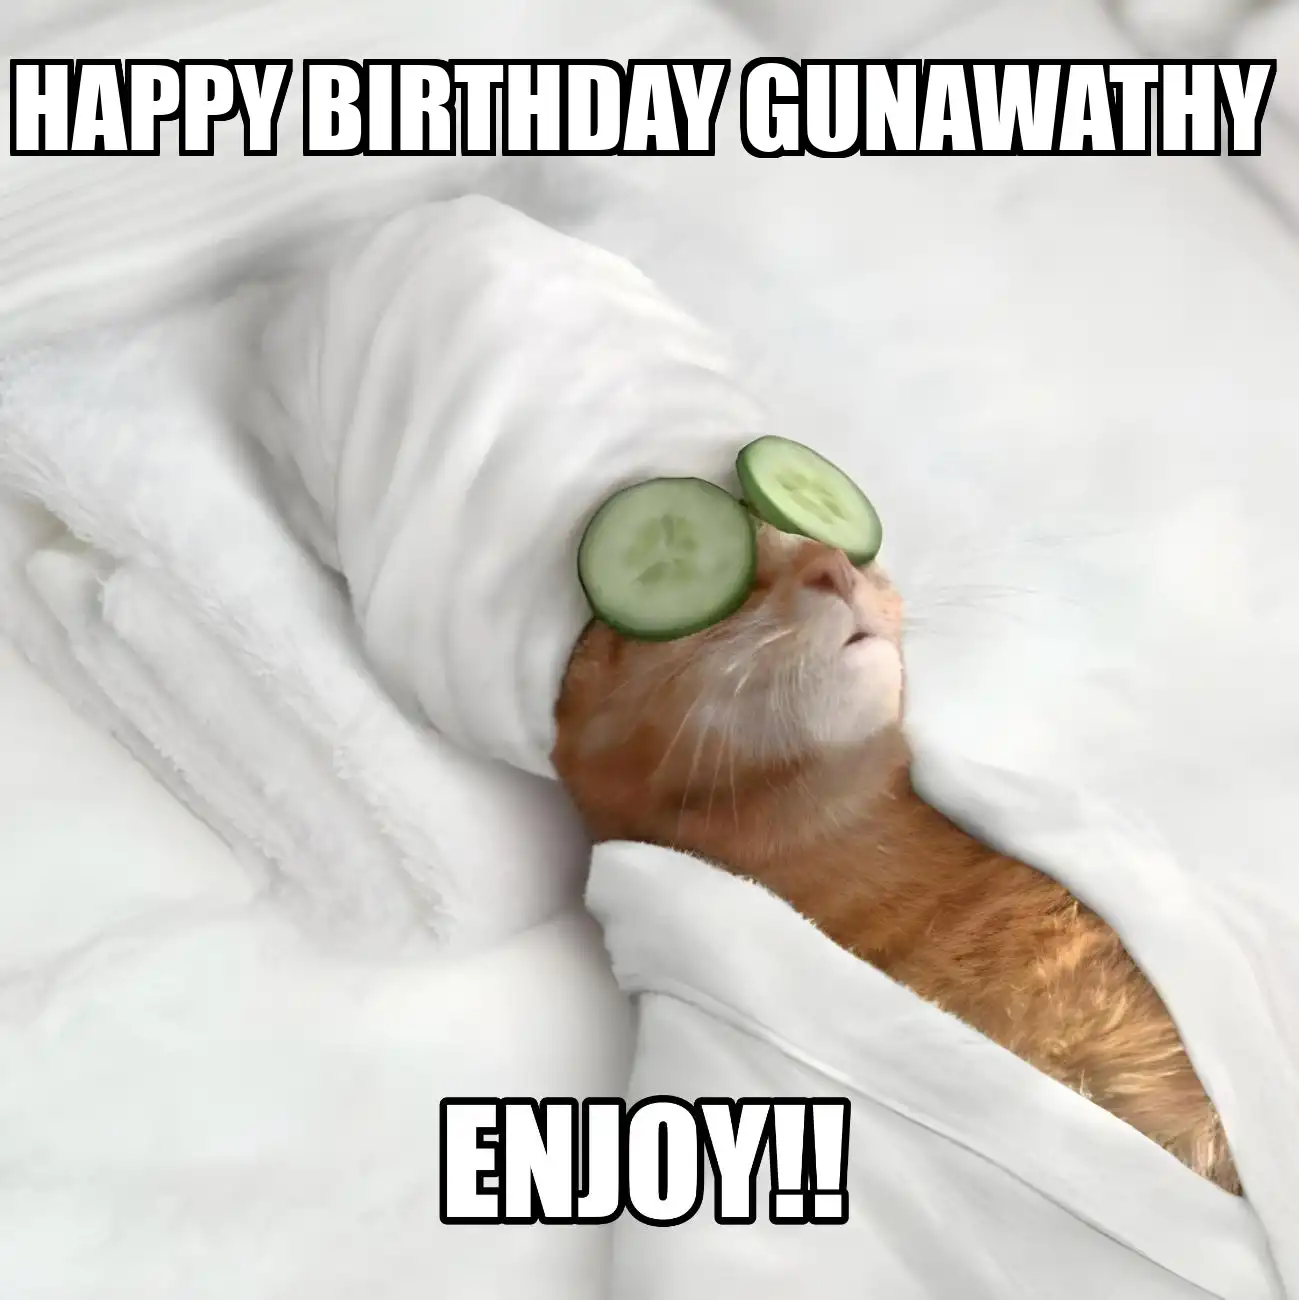 Happy Birthday Gunawathy Enjoy Cat Meme